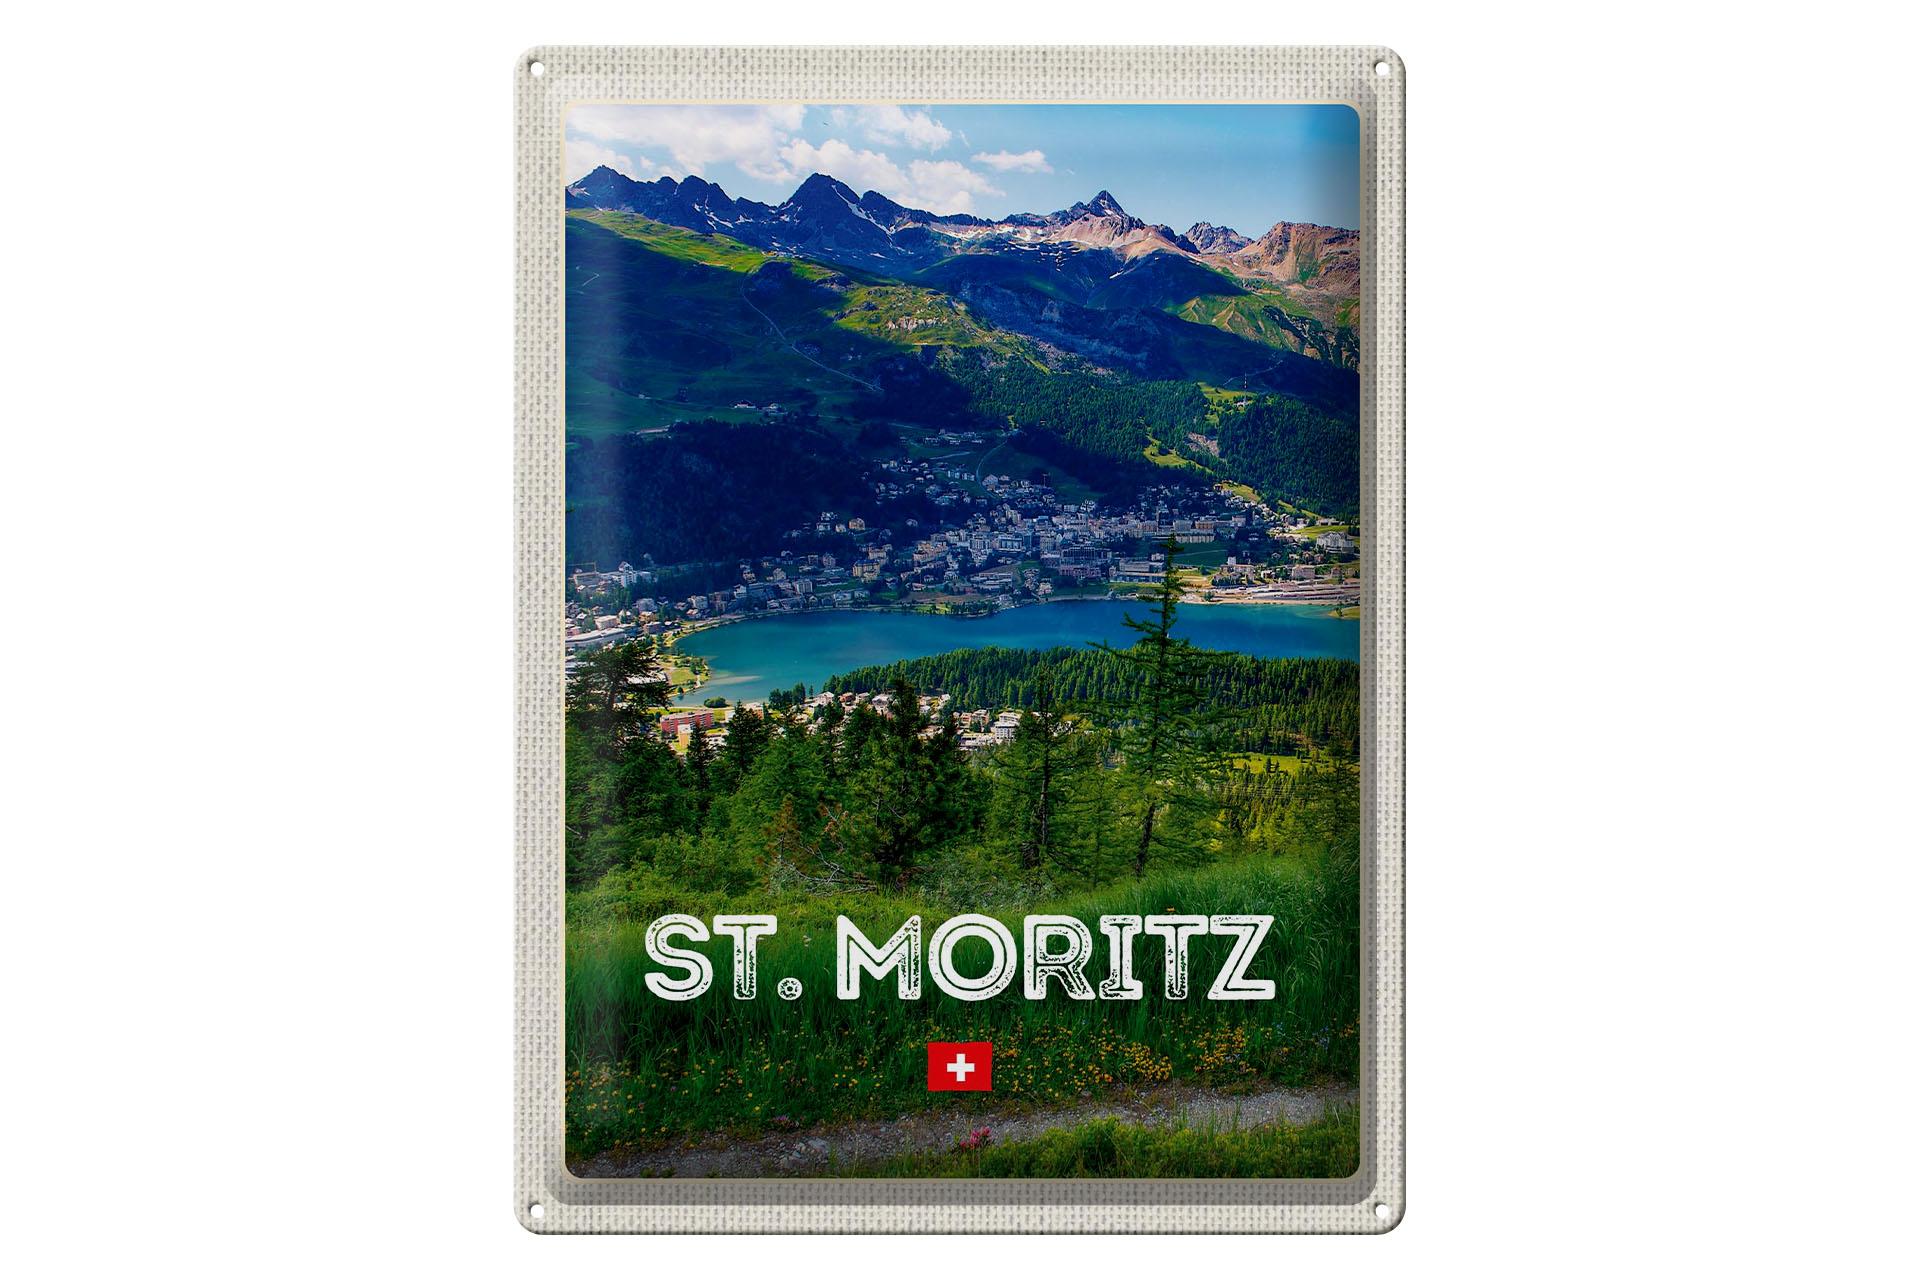 Blechschild Reise 30x40 cm St. Moritz Österreich Ausblich Reise